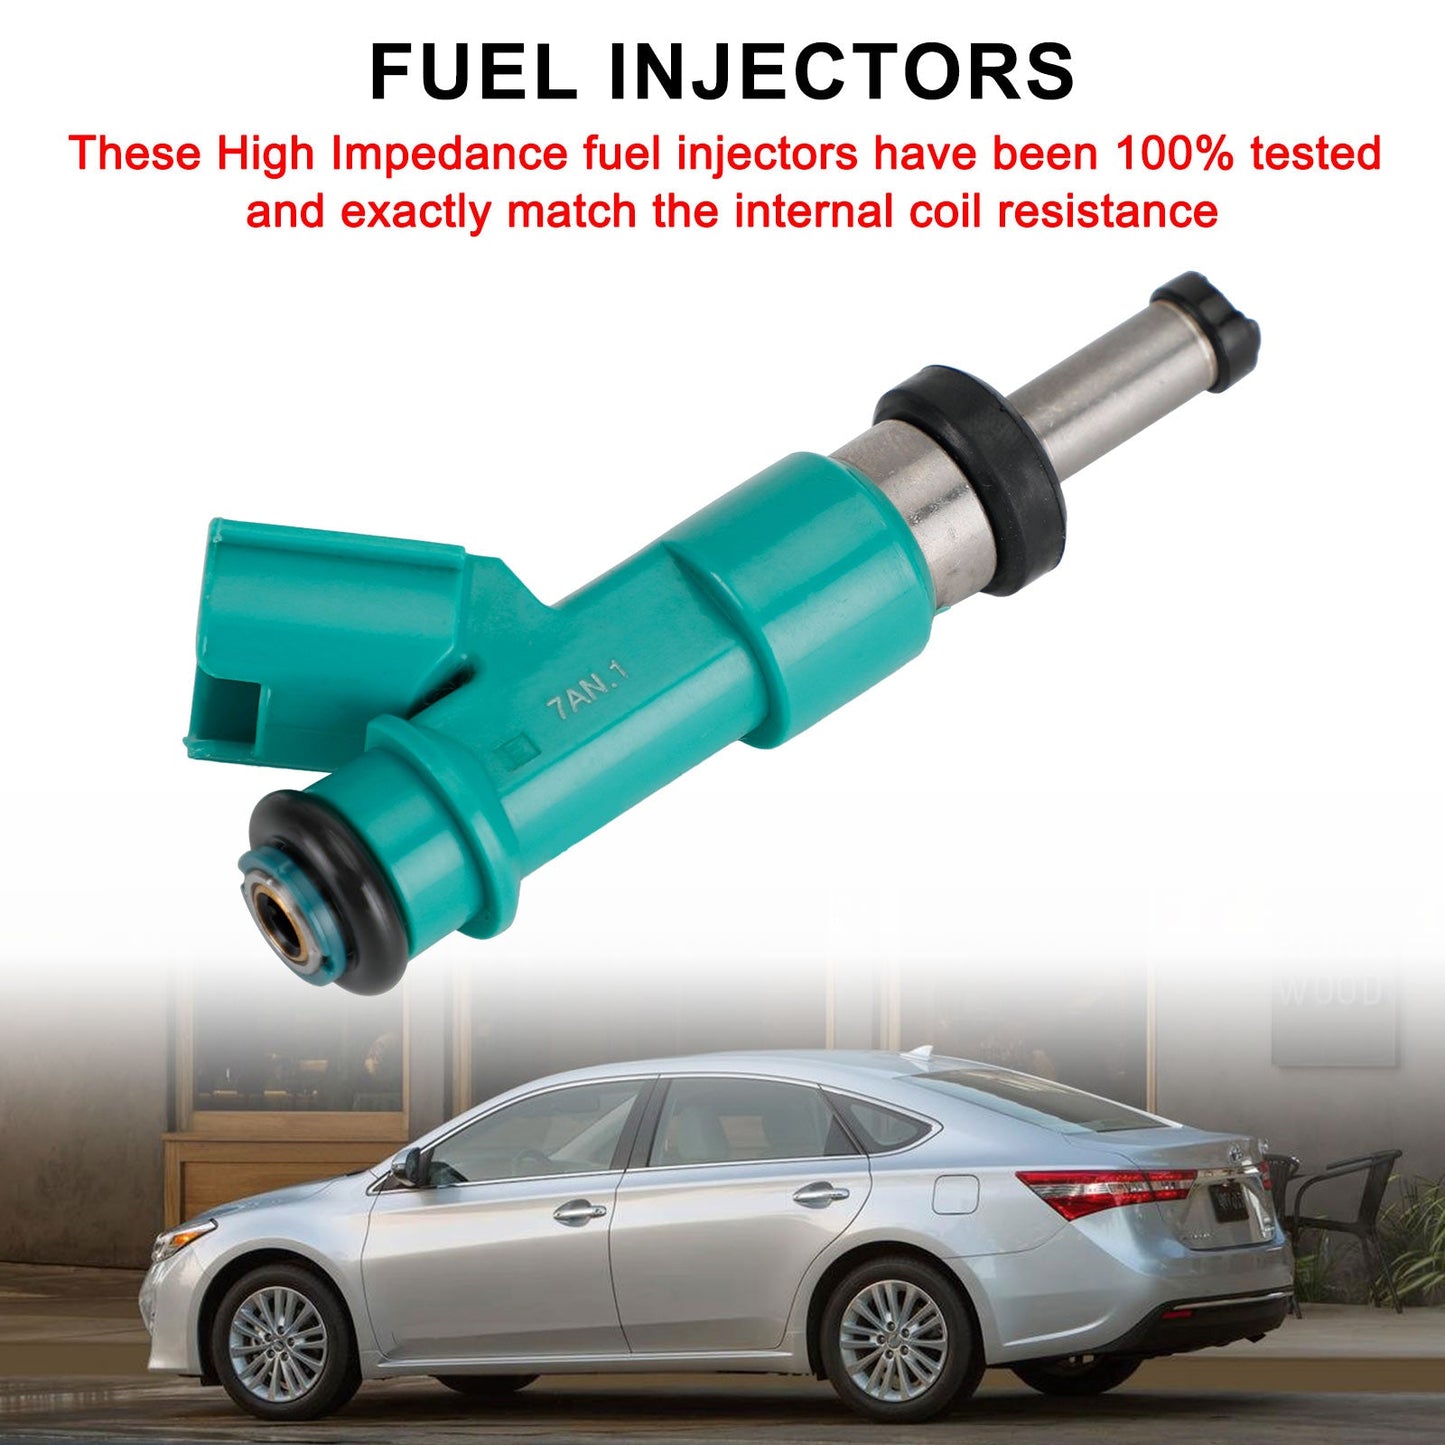 1PCS Fuel Injectors 23250-0P010 For Toyota Camry Highlander Sienna ES350 3.5L V6